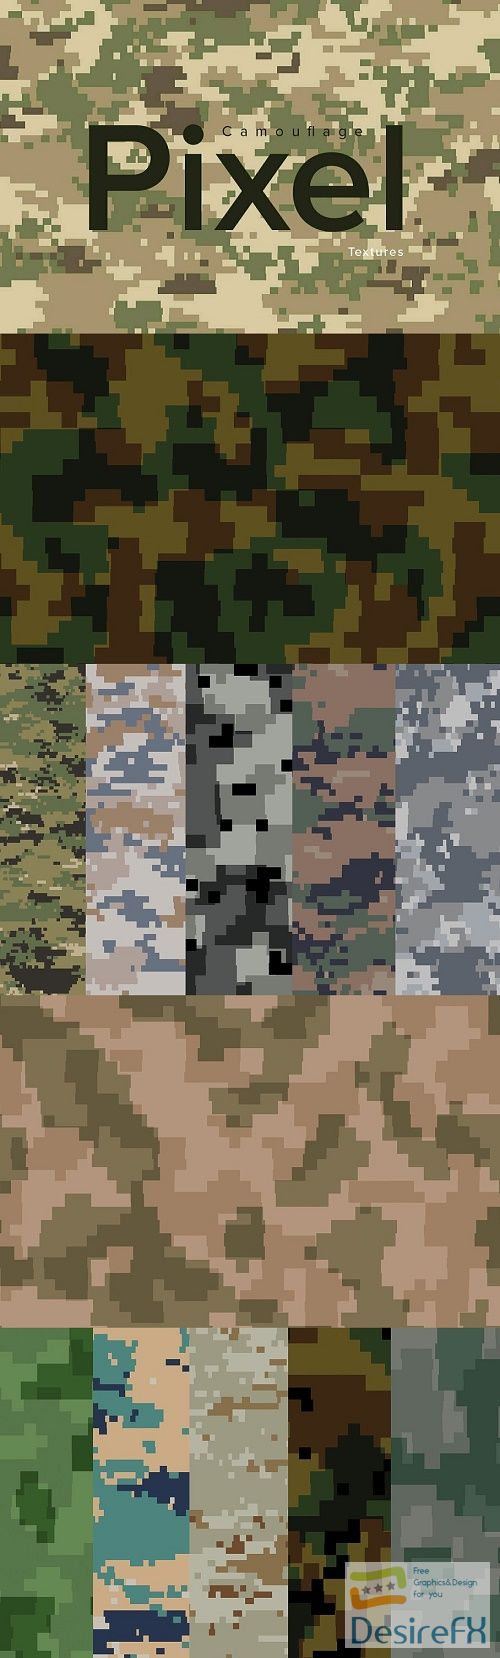 Pixel camouflage textures - 3918280